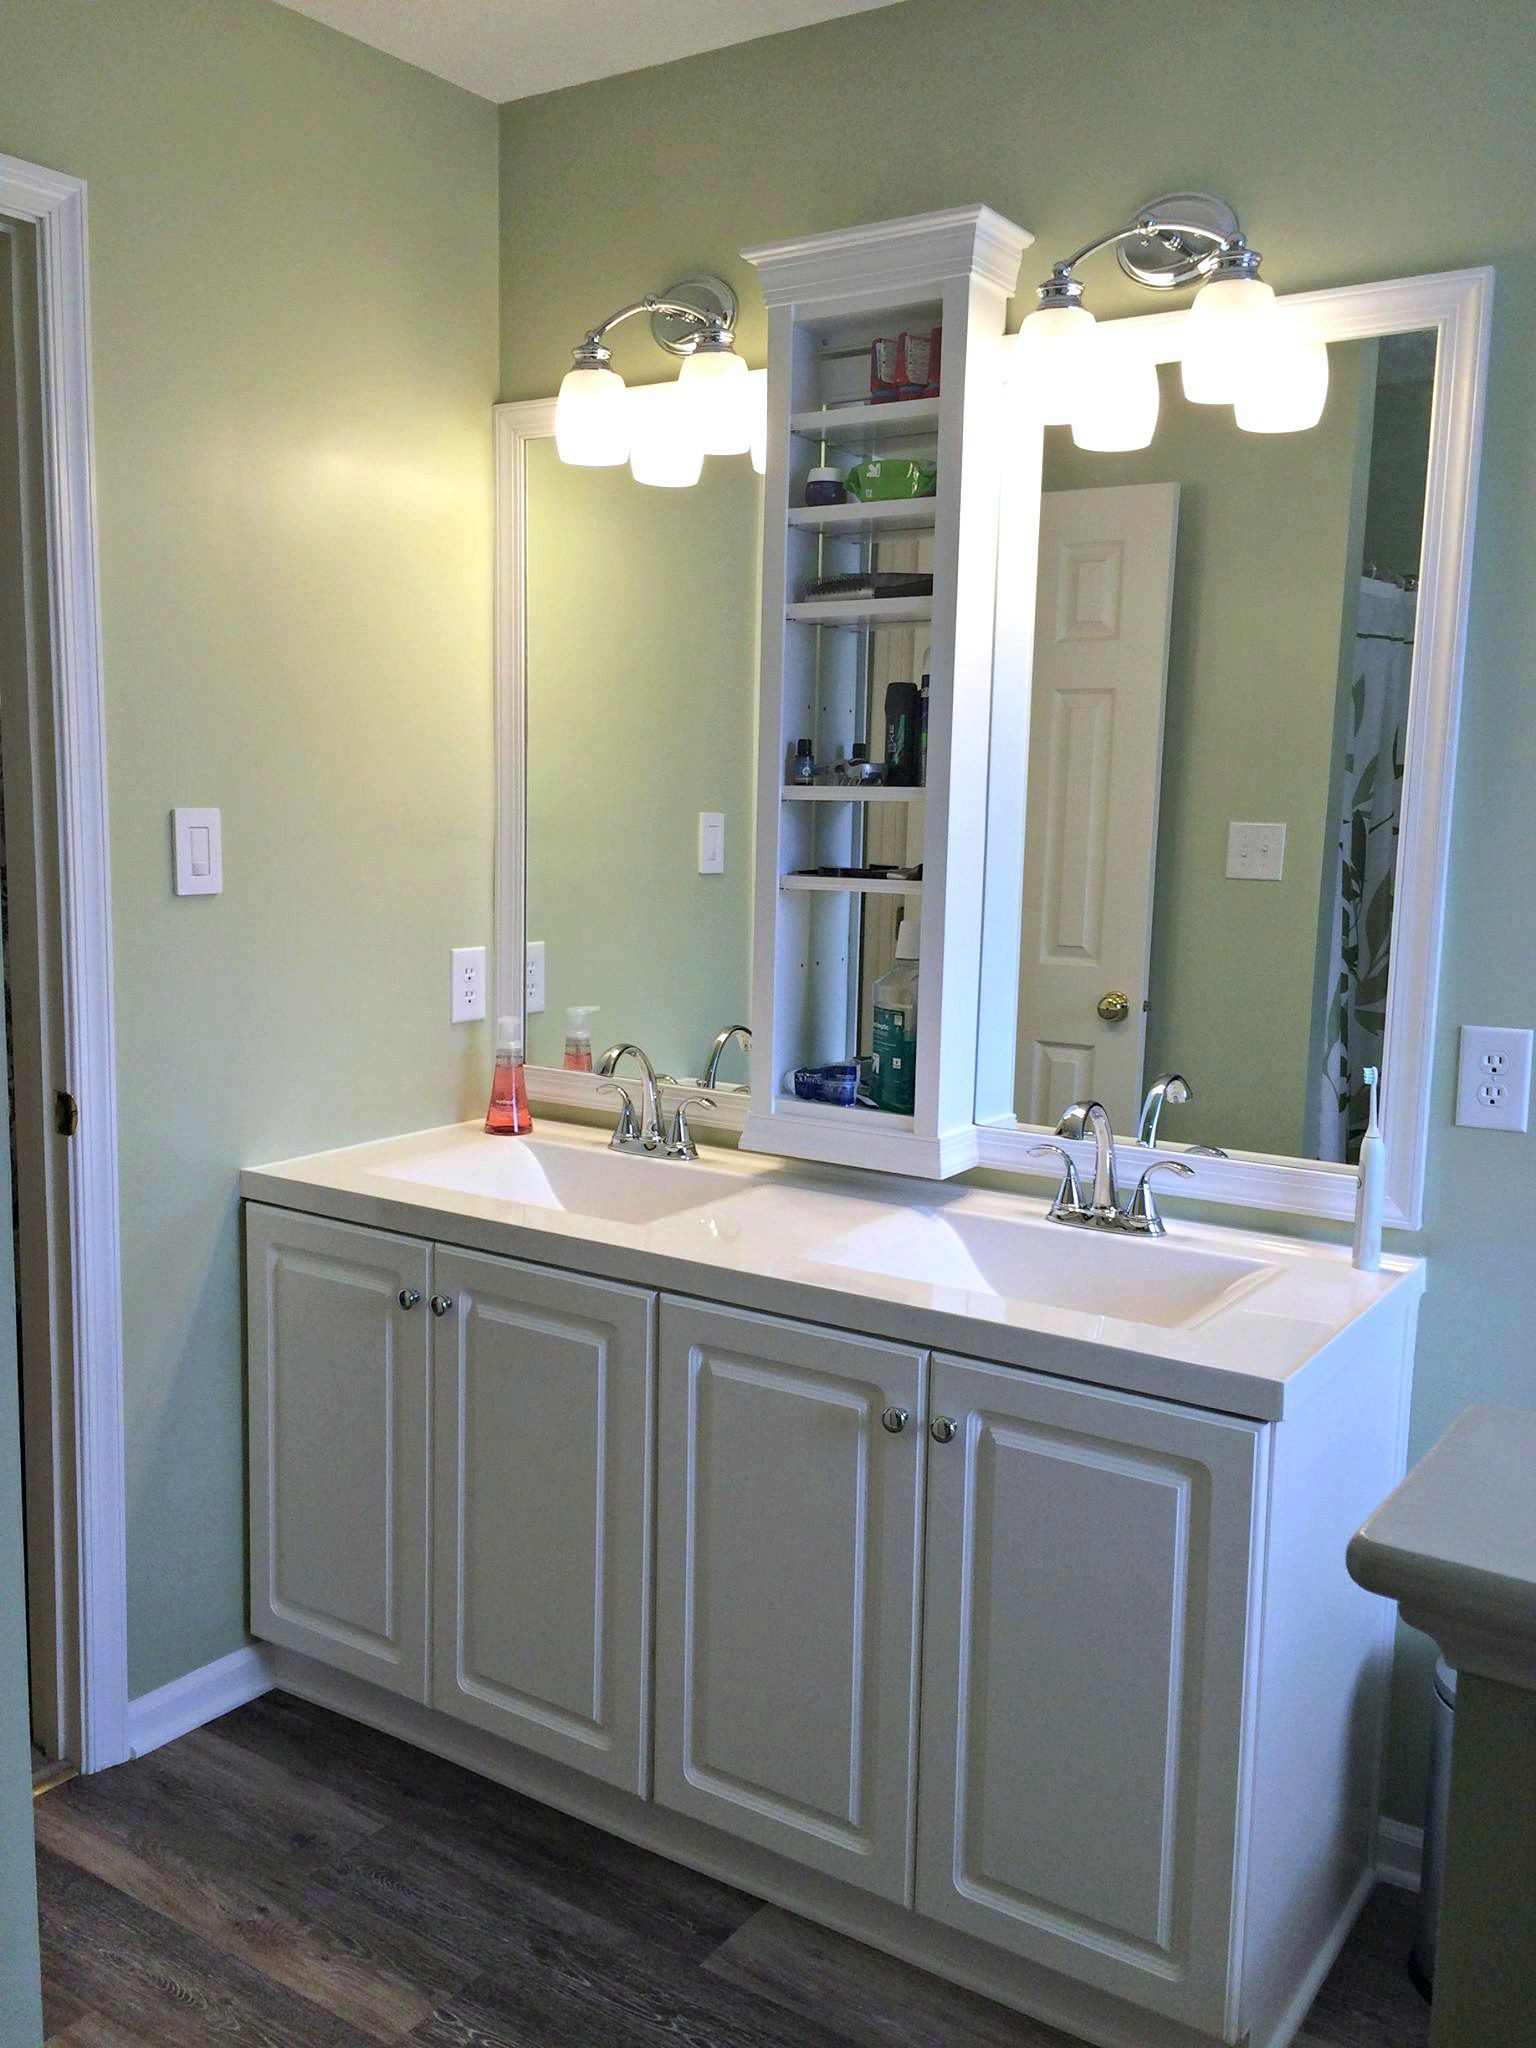 Bathroom Vanity Mirror With Shelf
 Master Bathroom vanity sink mirror update built in